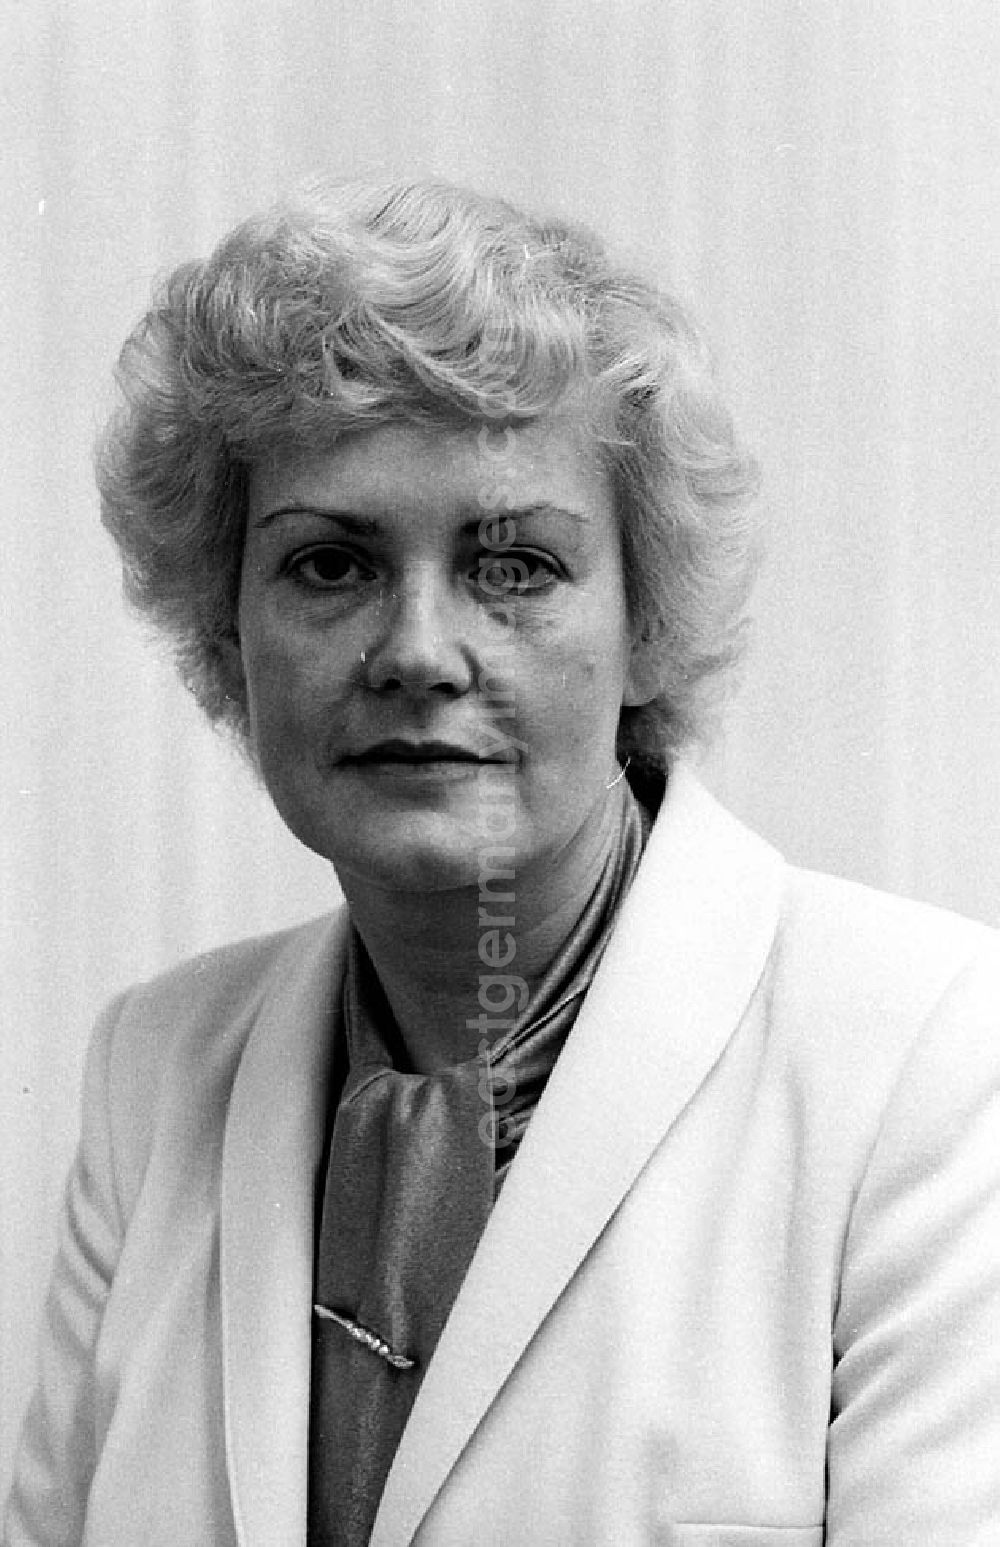 GDR picture archive: - 26.11.1982 5. Tagung des Zentralkomitees der SED Marianne Weinhauer, Abteilungsleiterin im Textilkombinat Cottbus Umschlagnr.: 1165